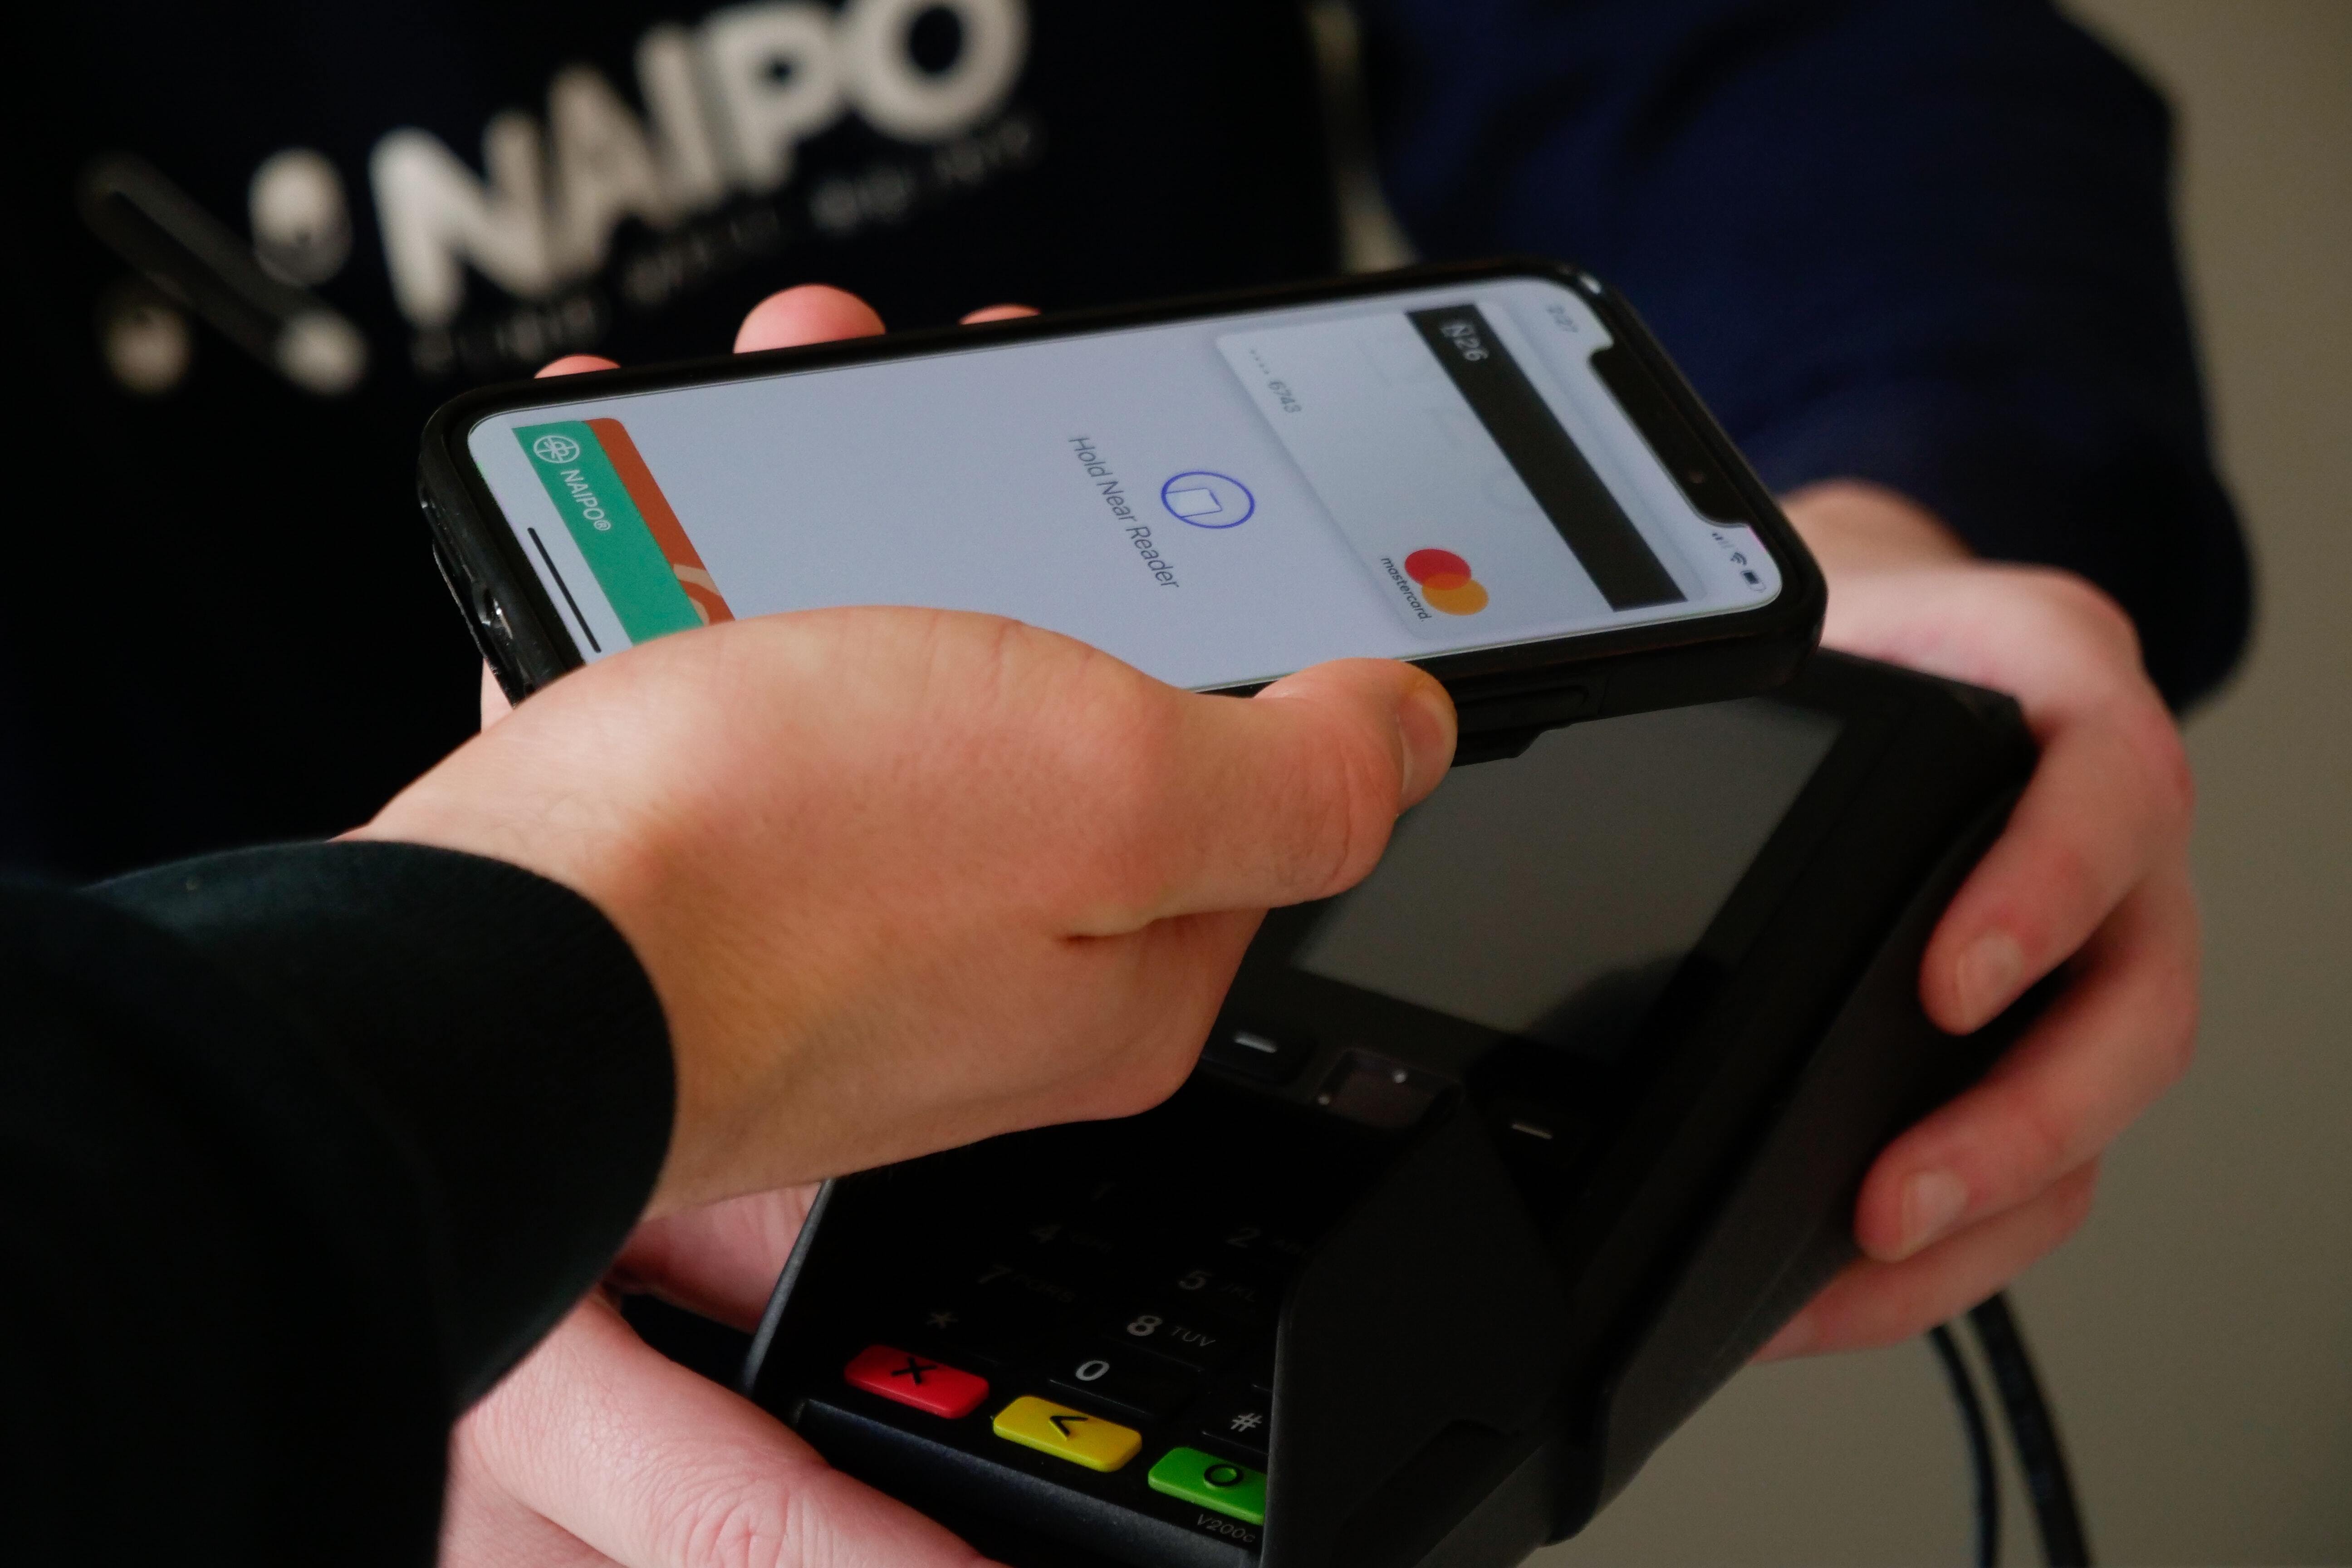 Transaksi mudah di mana saja dengan kartu kredit DBS